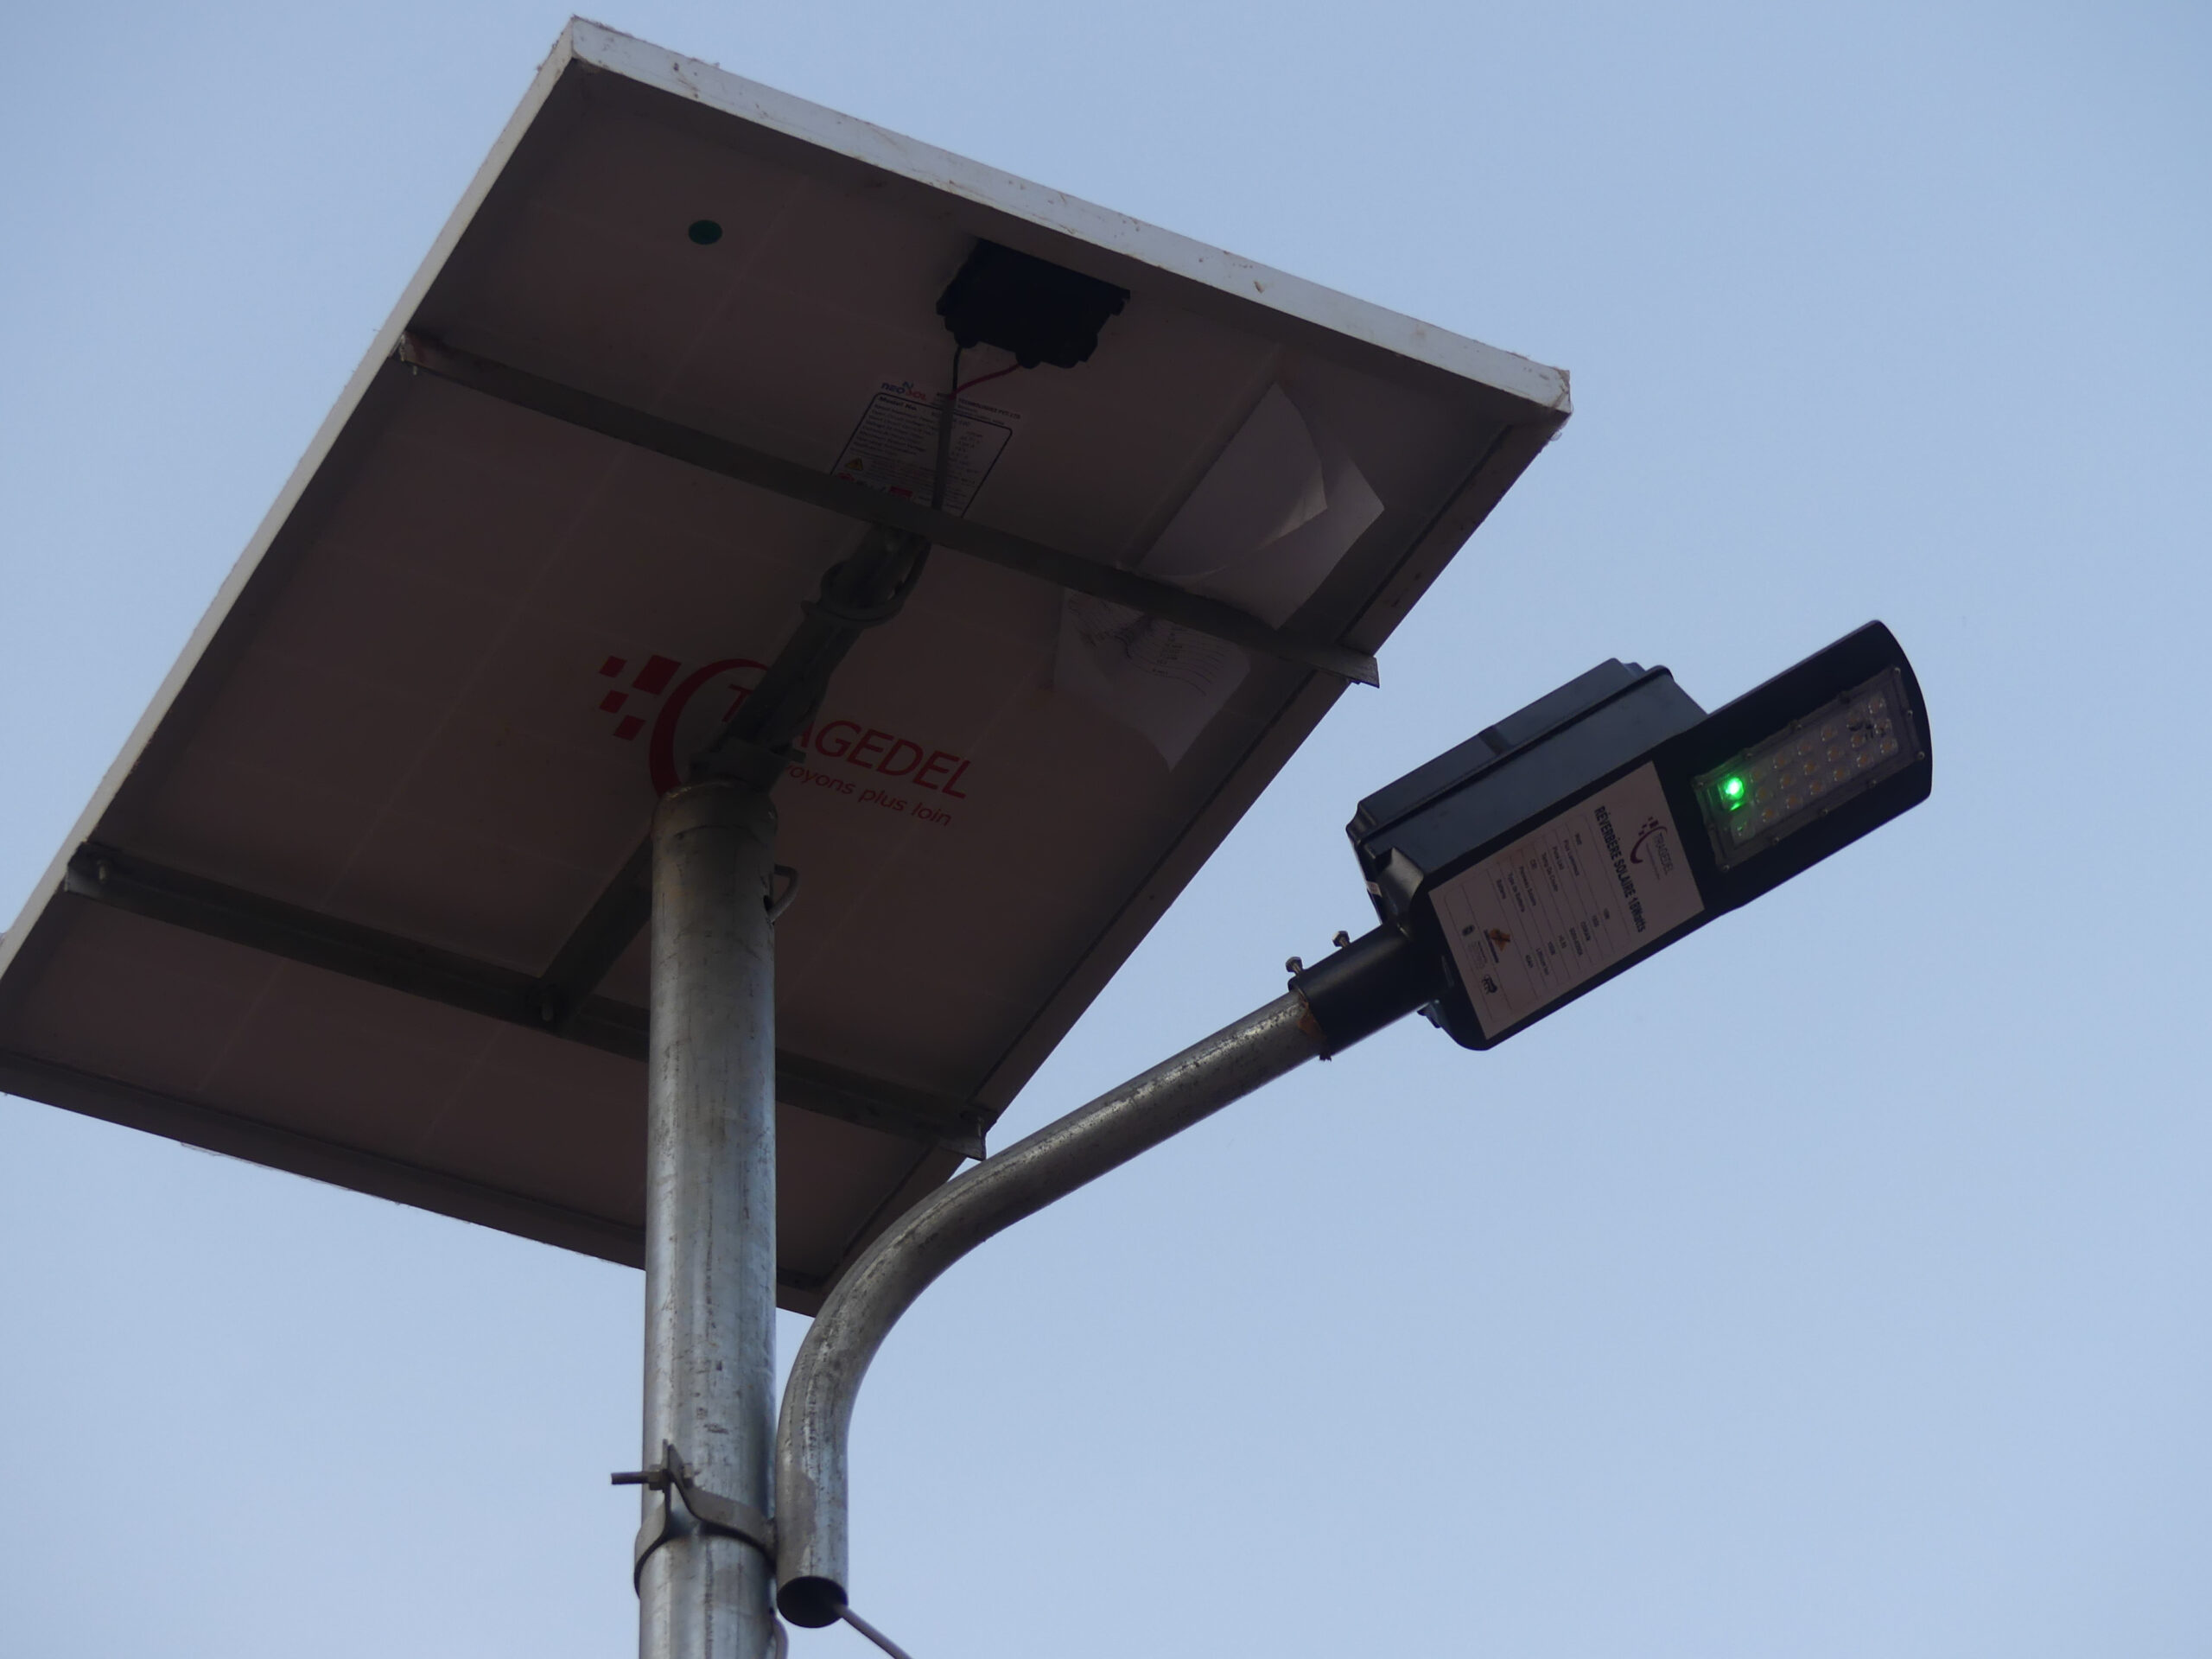 Vol de lampadaires solaires : un chef de quartier déplore le comportement de ses administrés